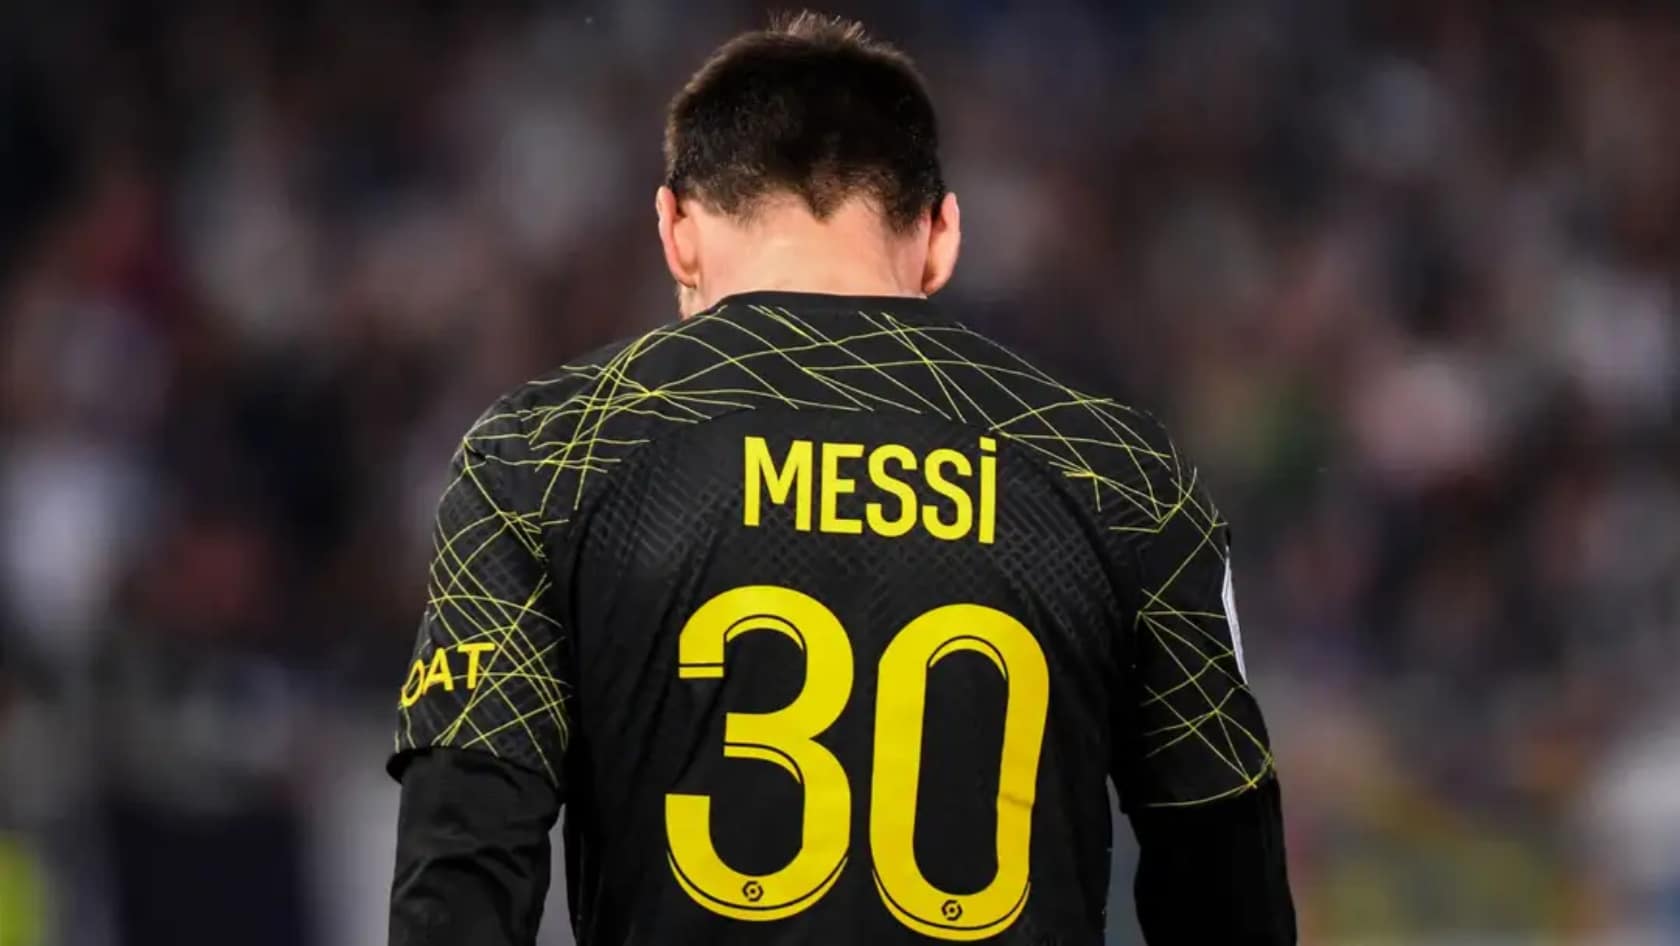 Révélation : Ce qu’a finalement dit Messi au Barça sur son avenir